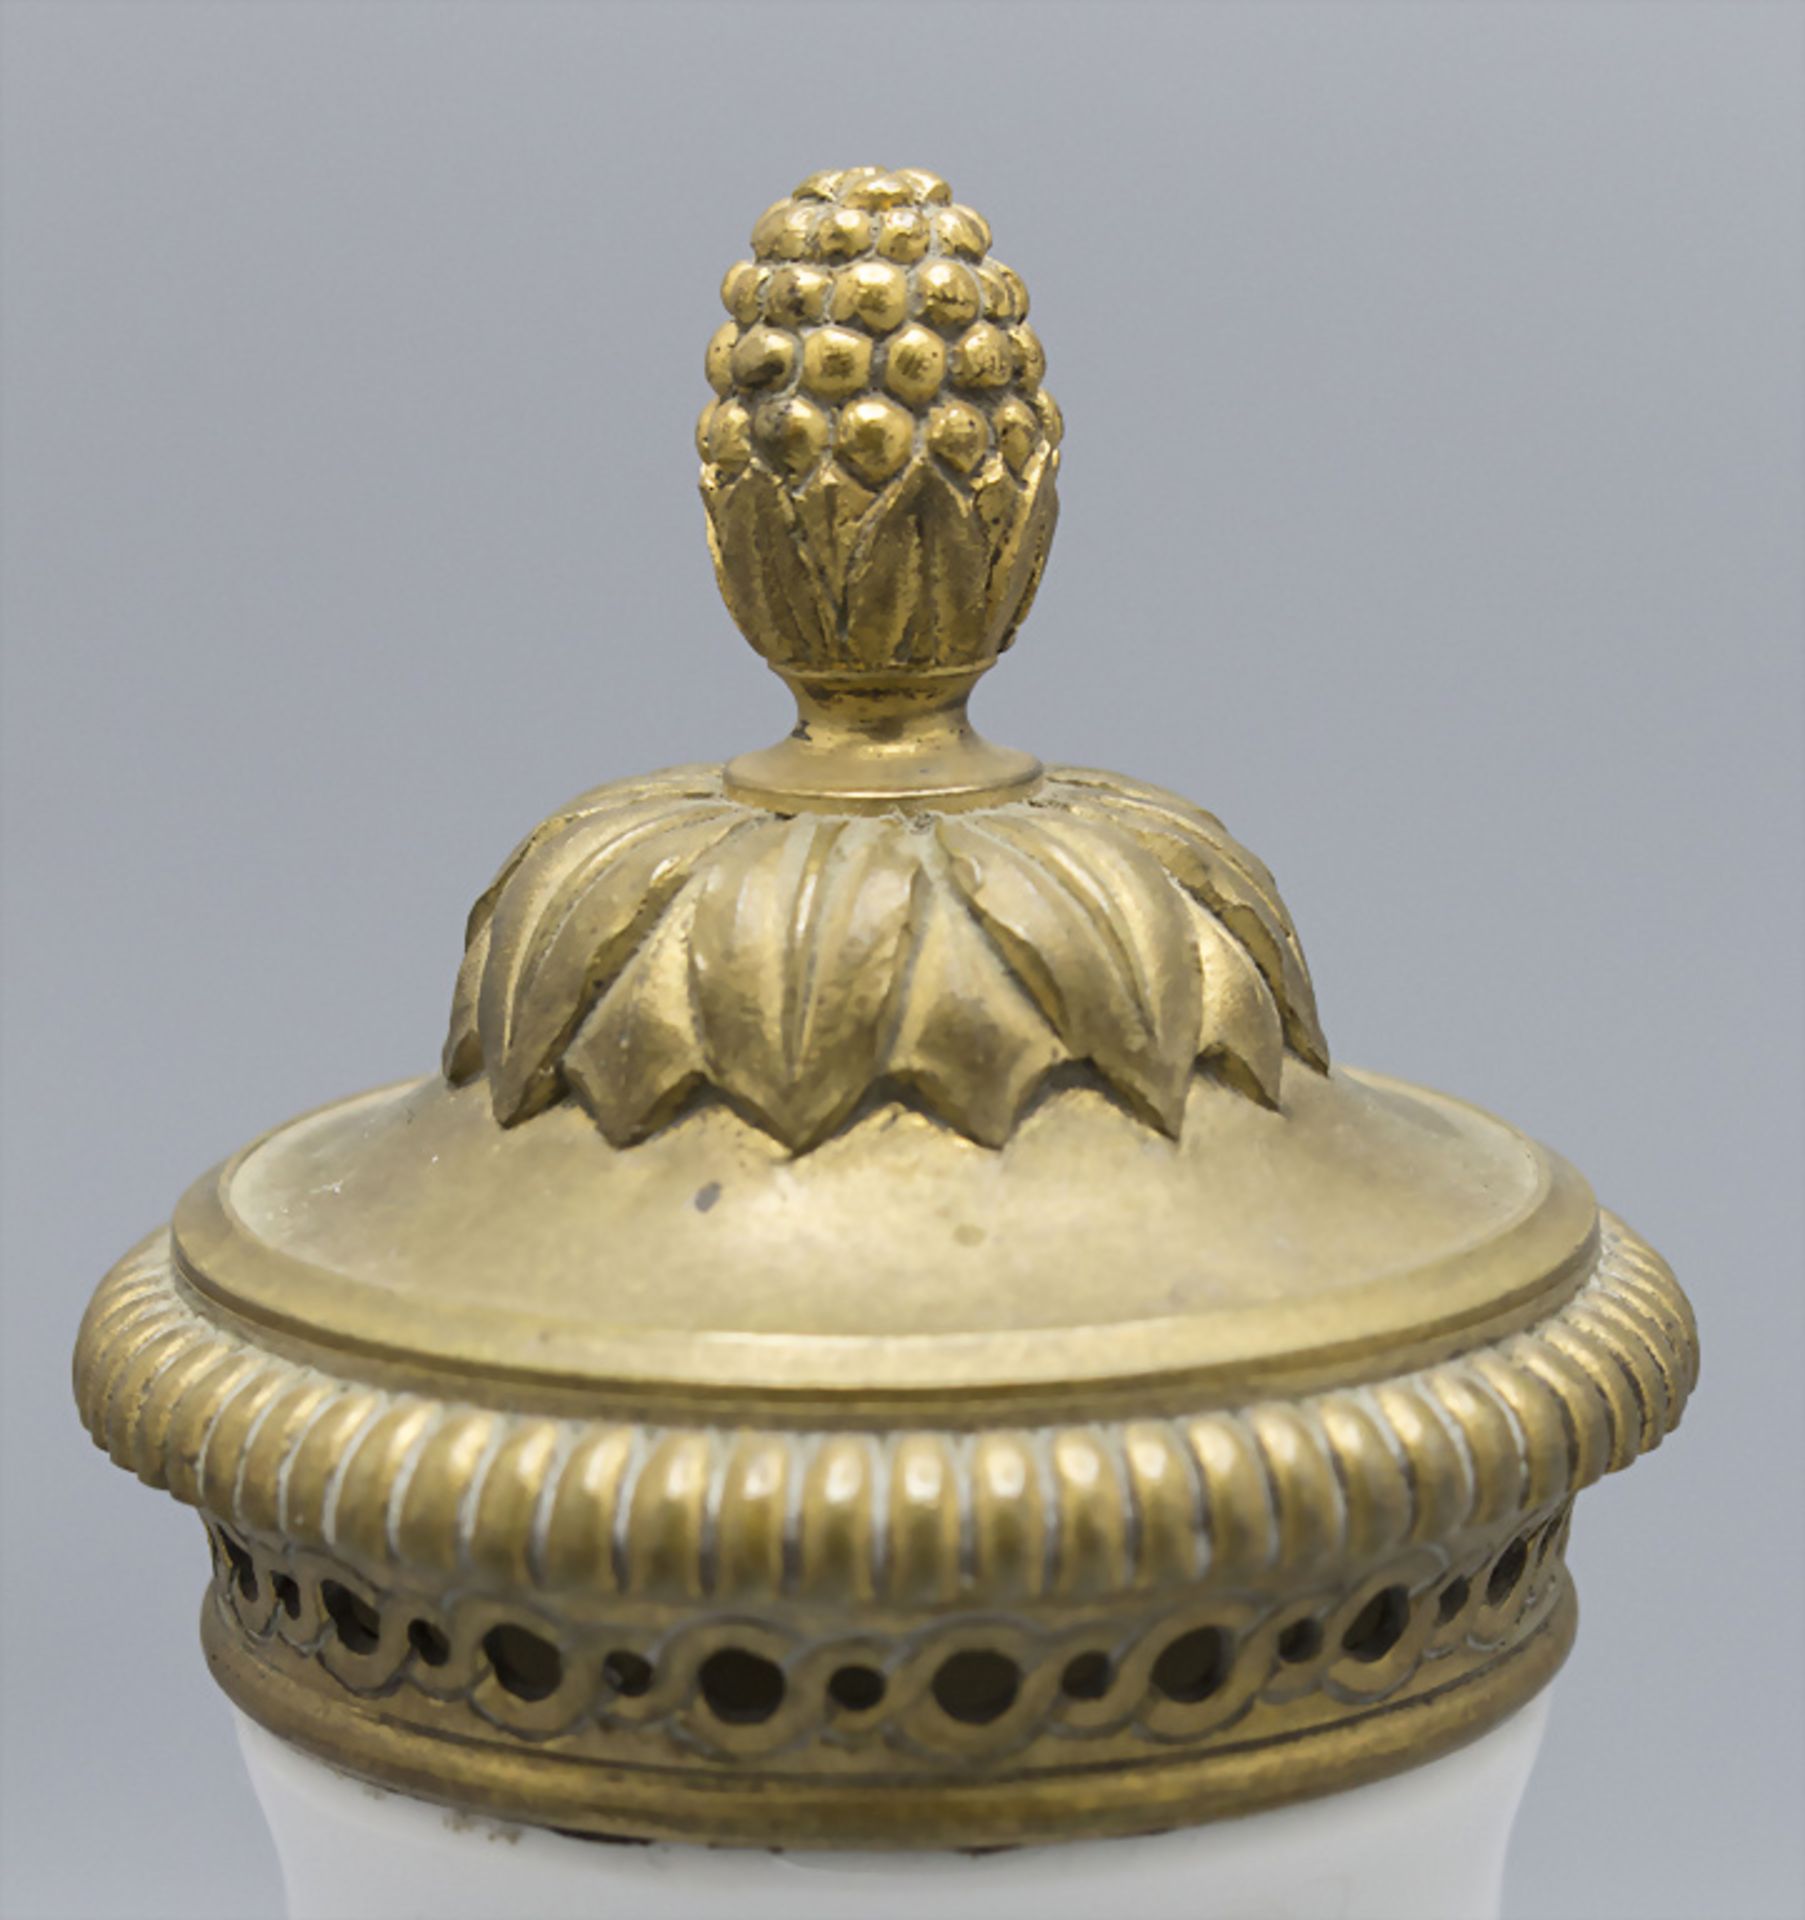 Jugendstil Lampe mit Blauregen / An Art Nouveau porcelain lamp with wisteria, Royal ... - Image 4 of 5